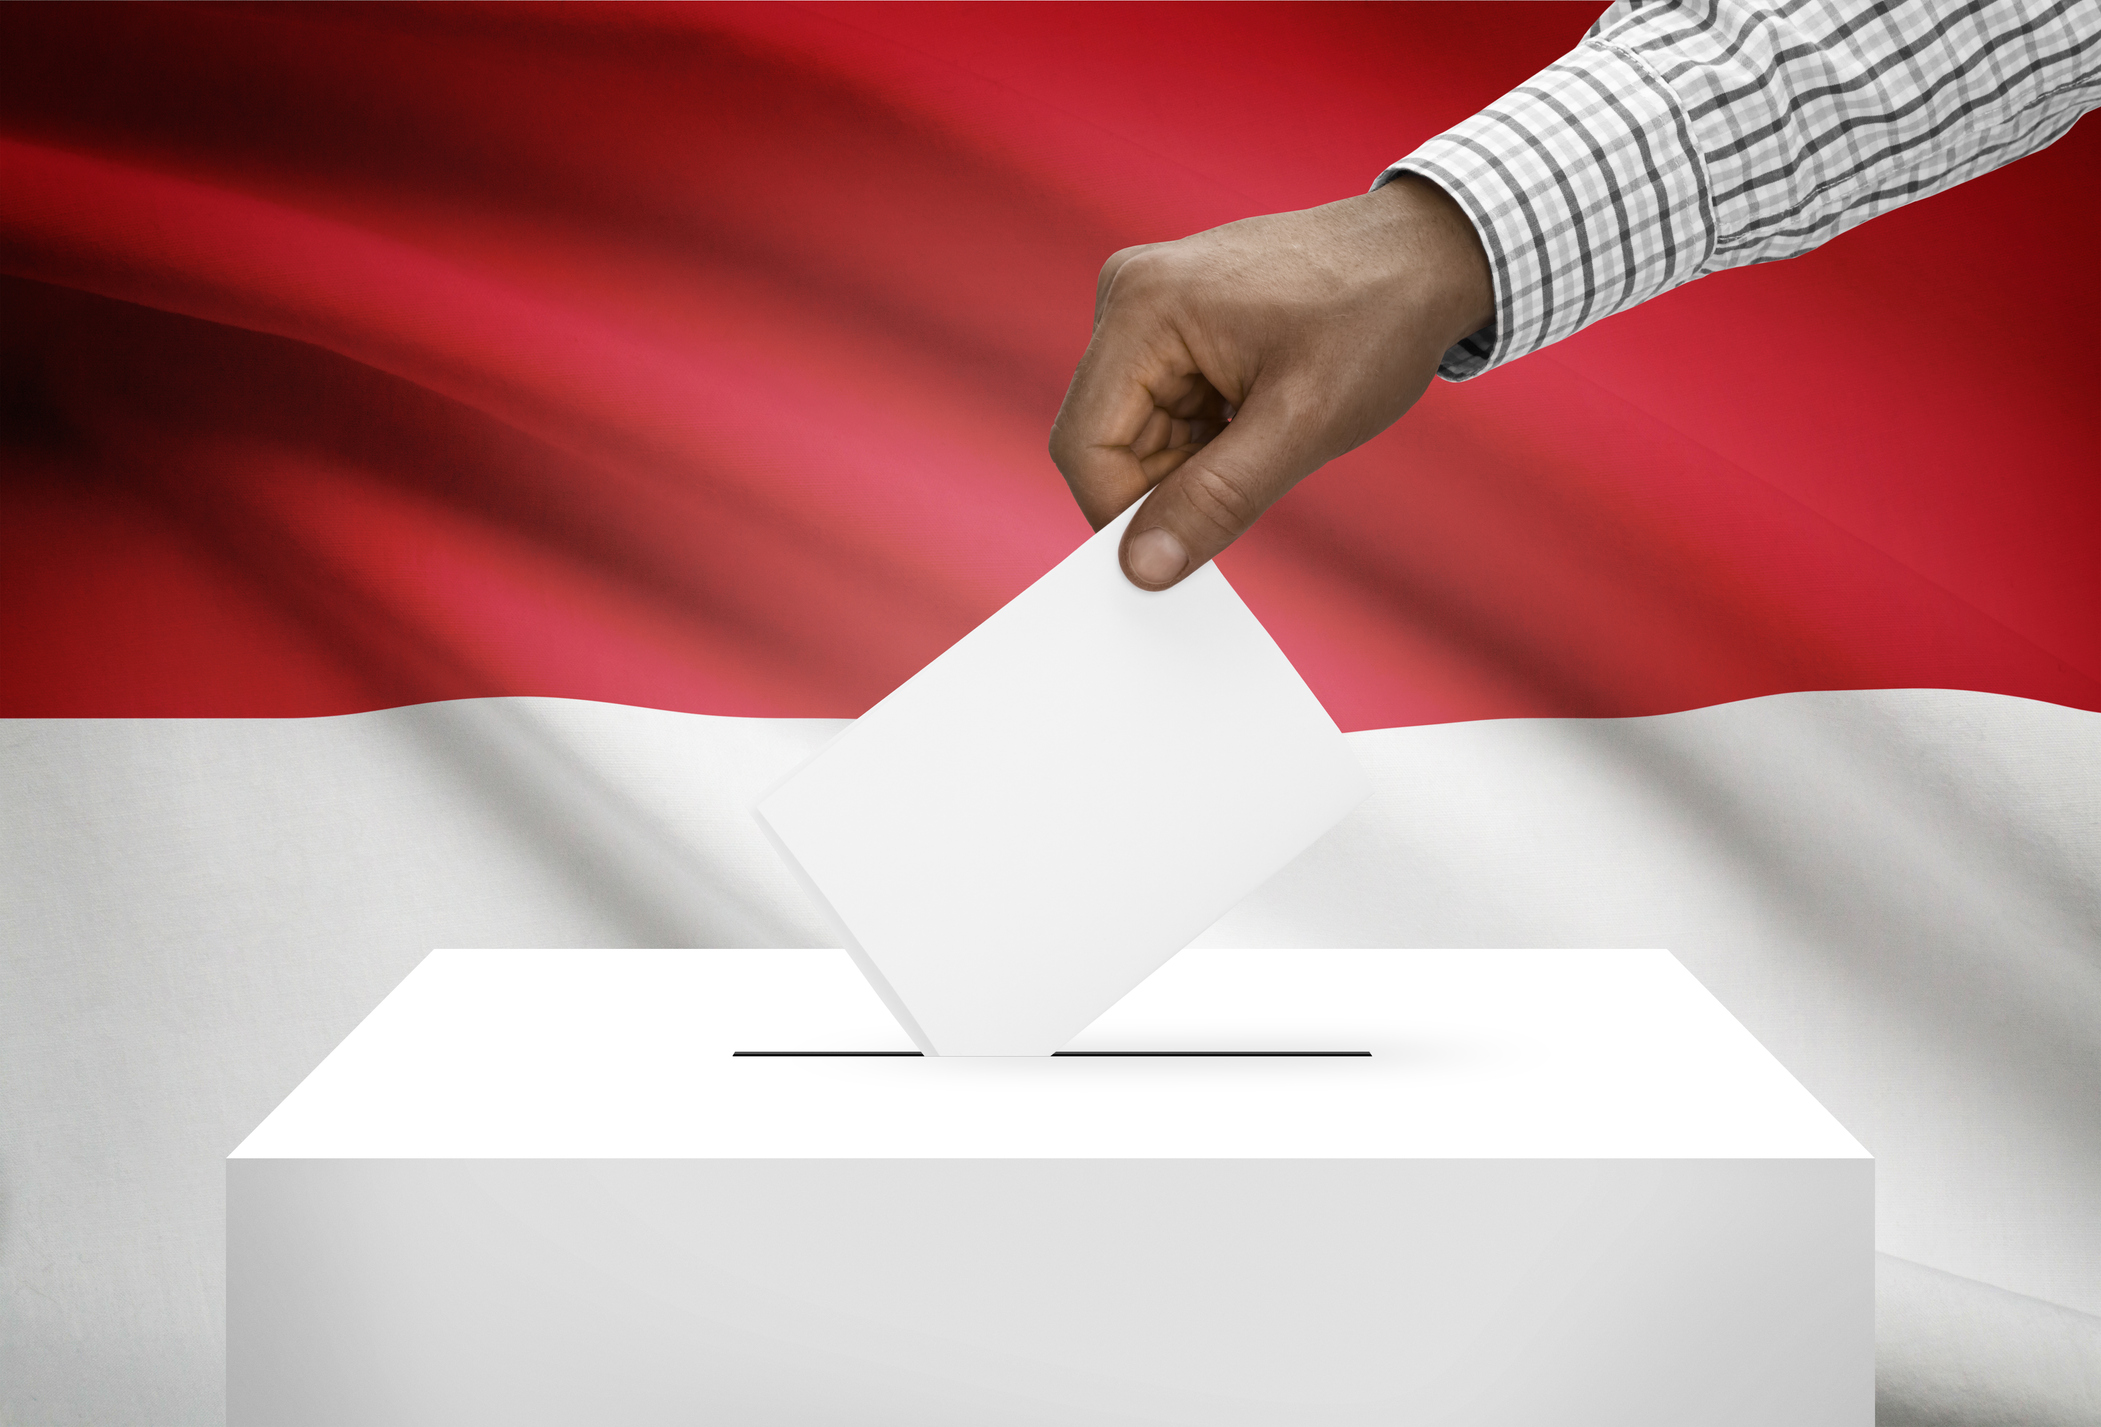 Tiga orang mencalonkan diri sebagai presiden Indonesia